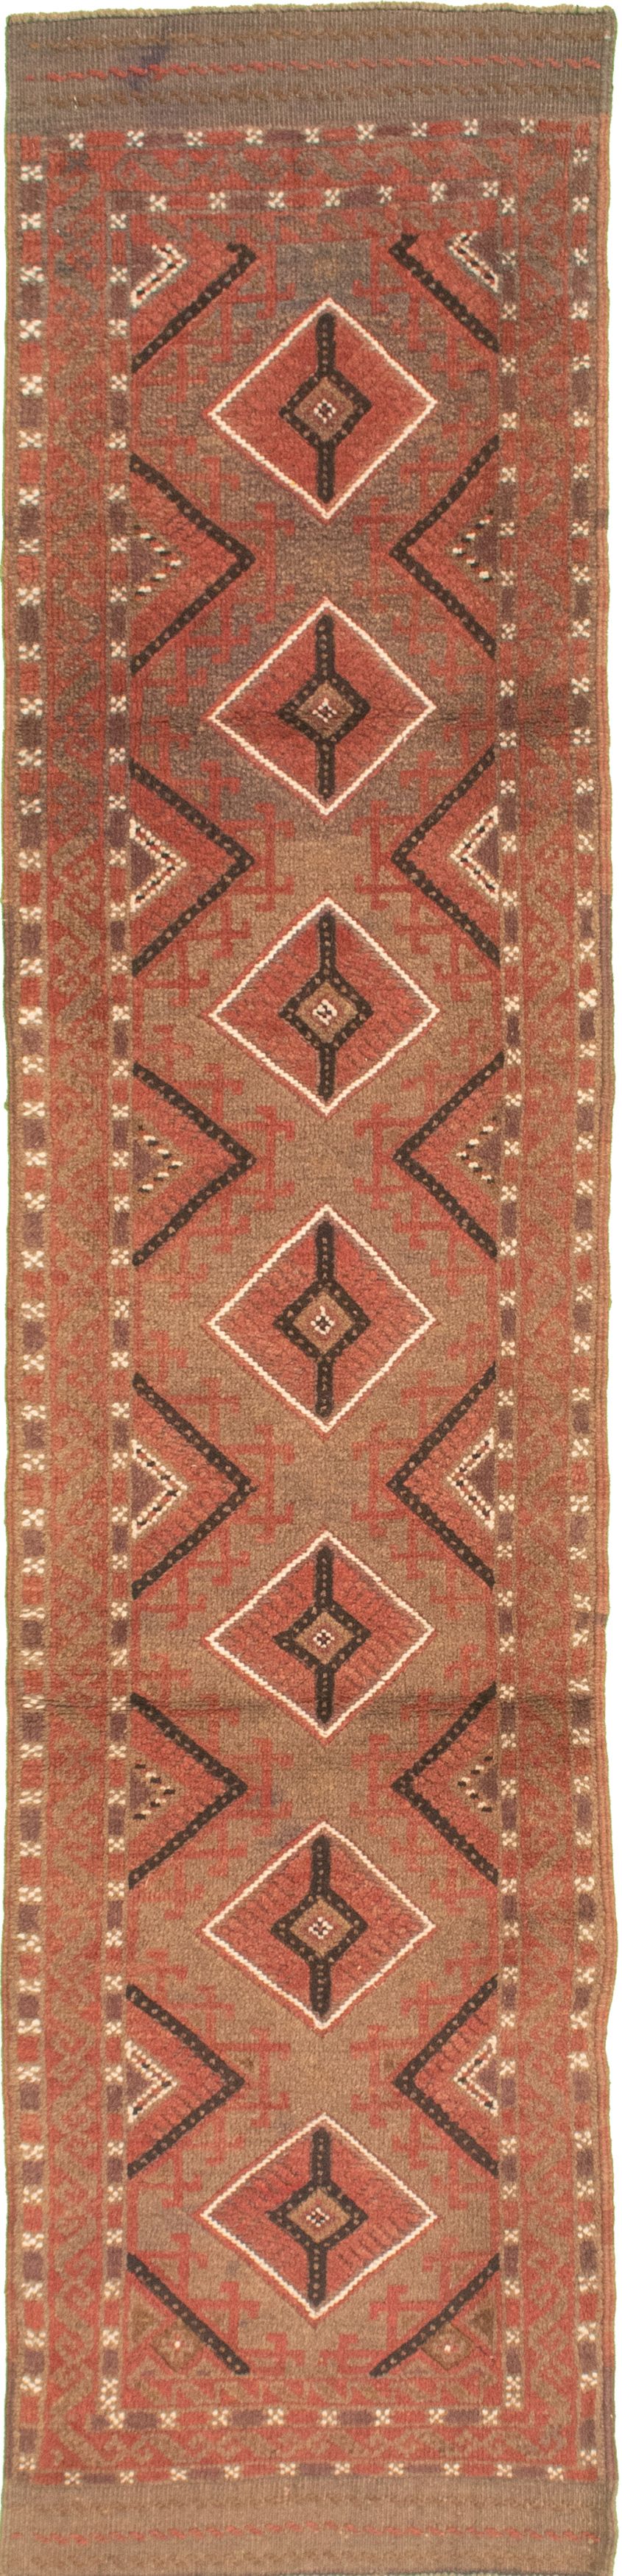 Hand-knotted Tajik Caucasian Khaki Wool Rug 2'0" x 8'6" Size: 2'0" x 8'6"  